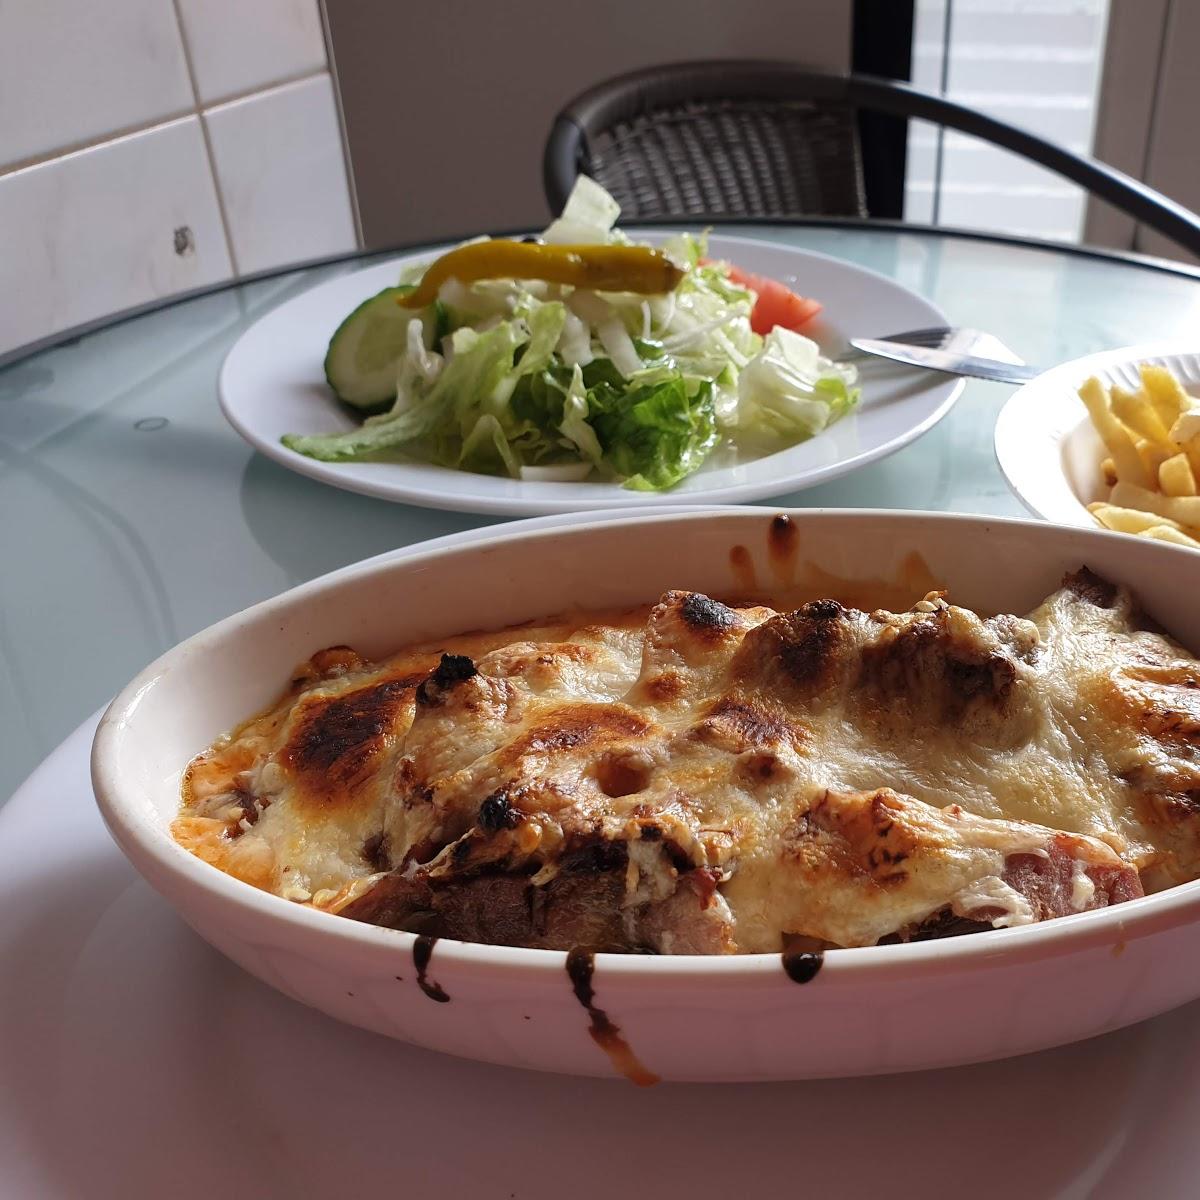 Restaurant "Griechischer Grill-Imbiss" in Luckau